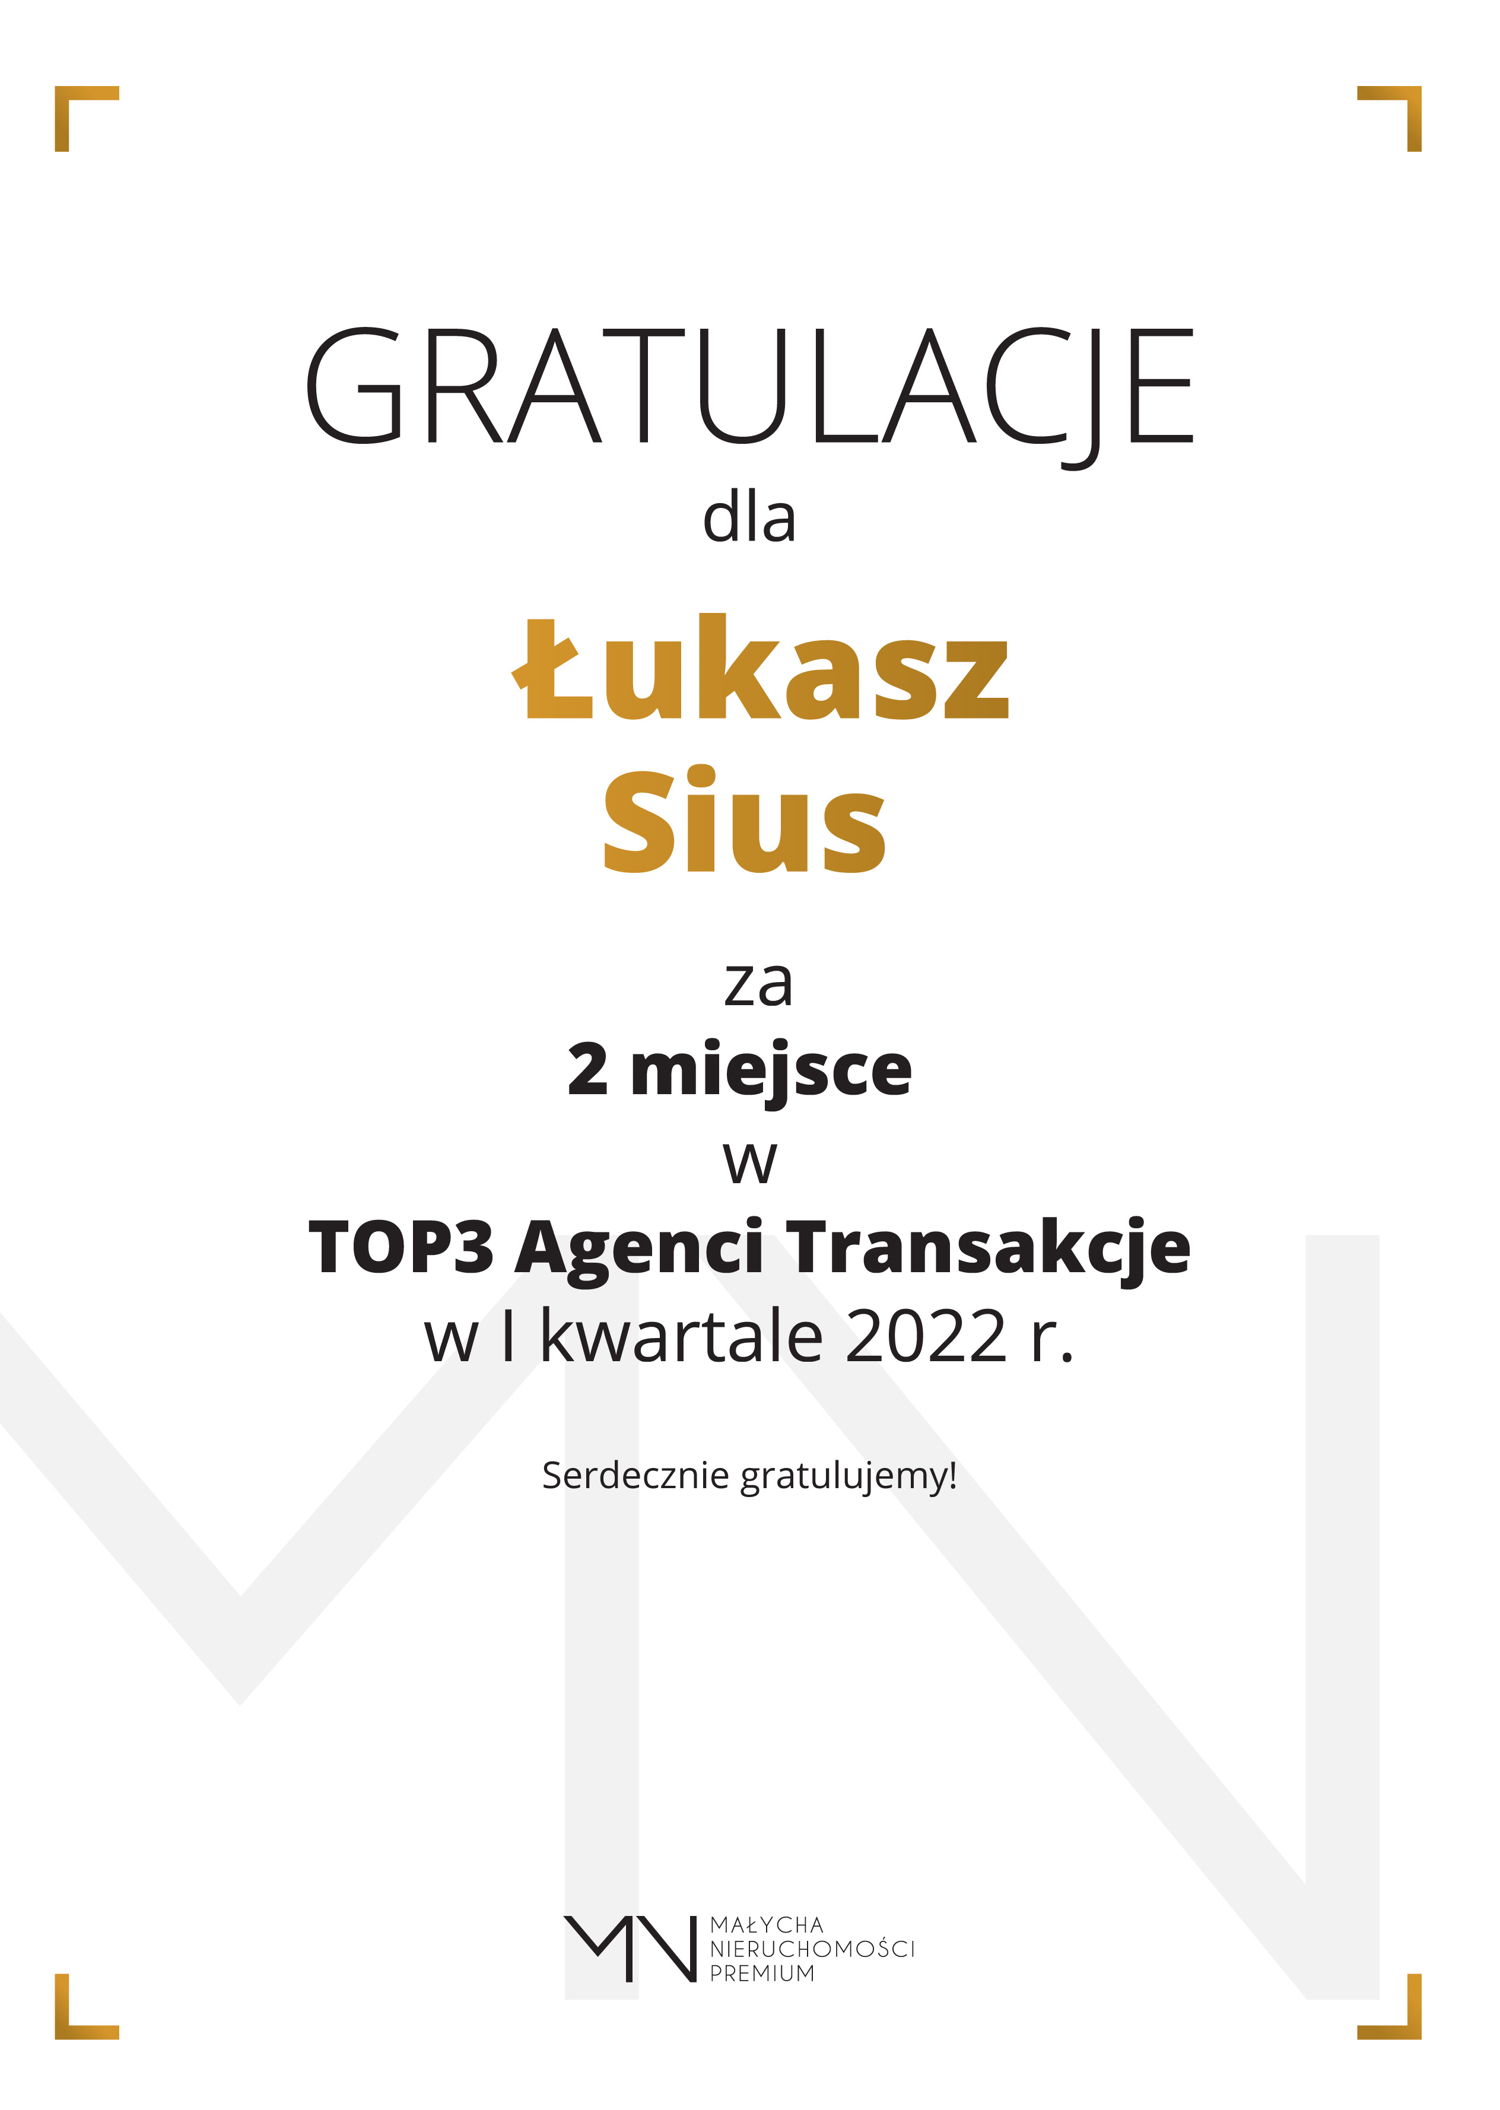 lukasz_Sius_TOP3_Agenci_Transkacje-01